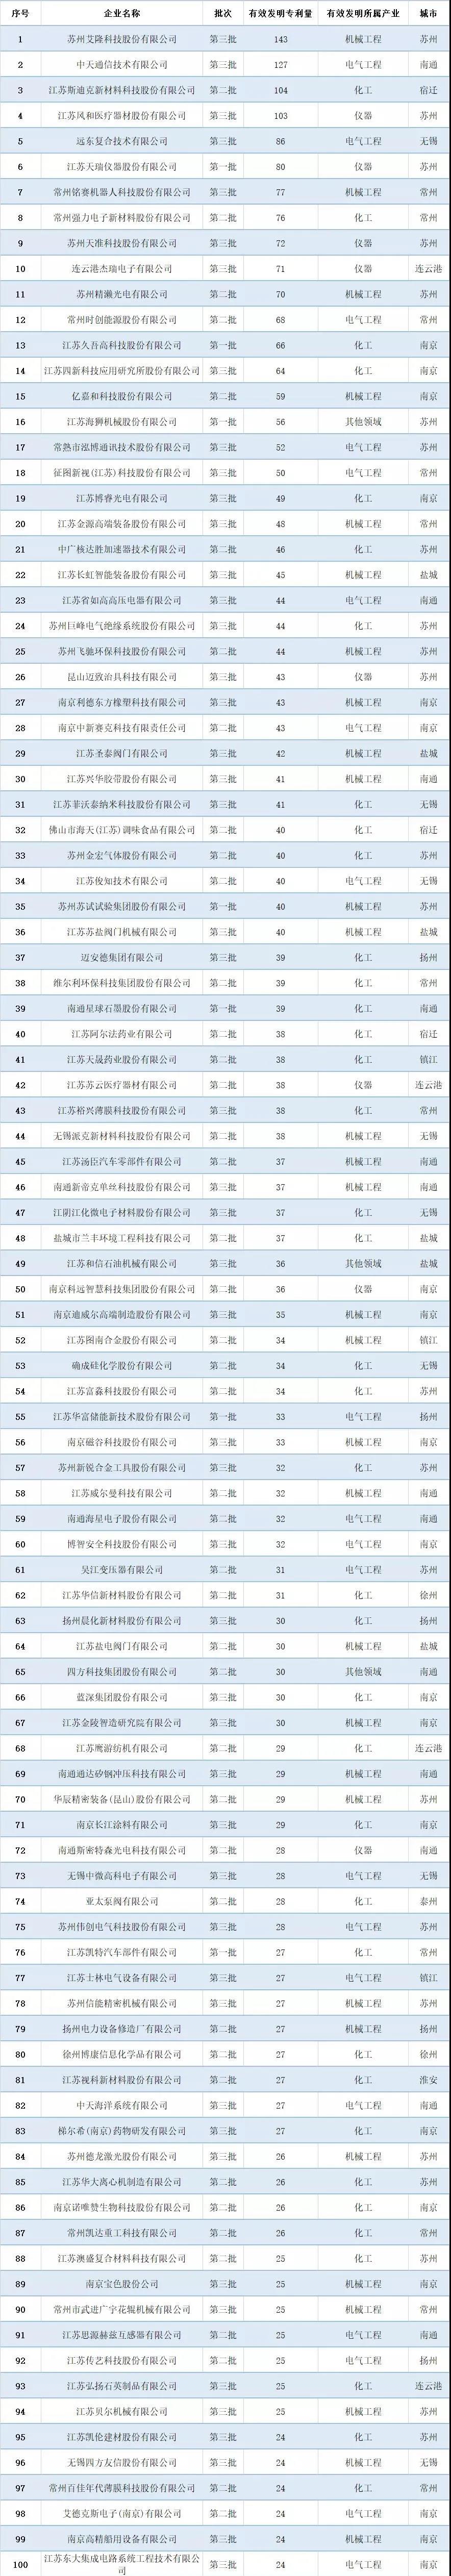 2021年江苏省专精特新企业“小巨人”专利排行榜